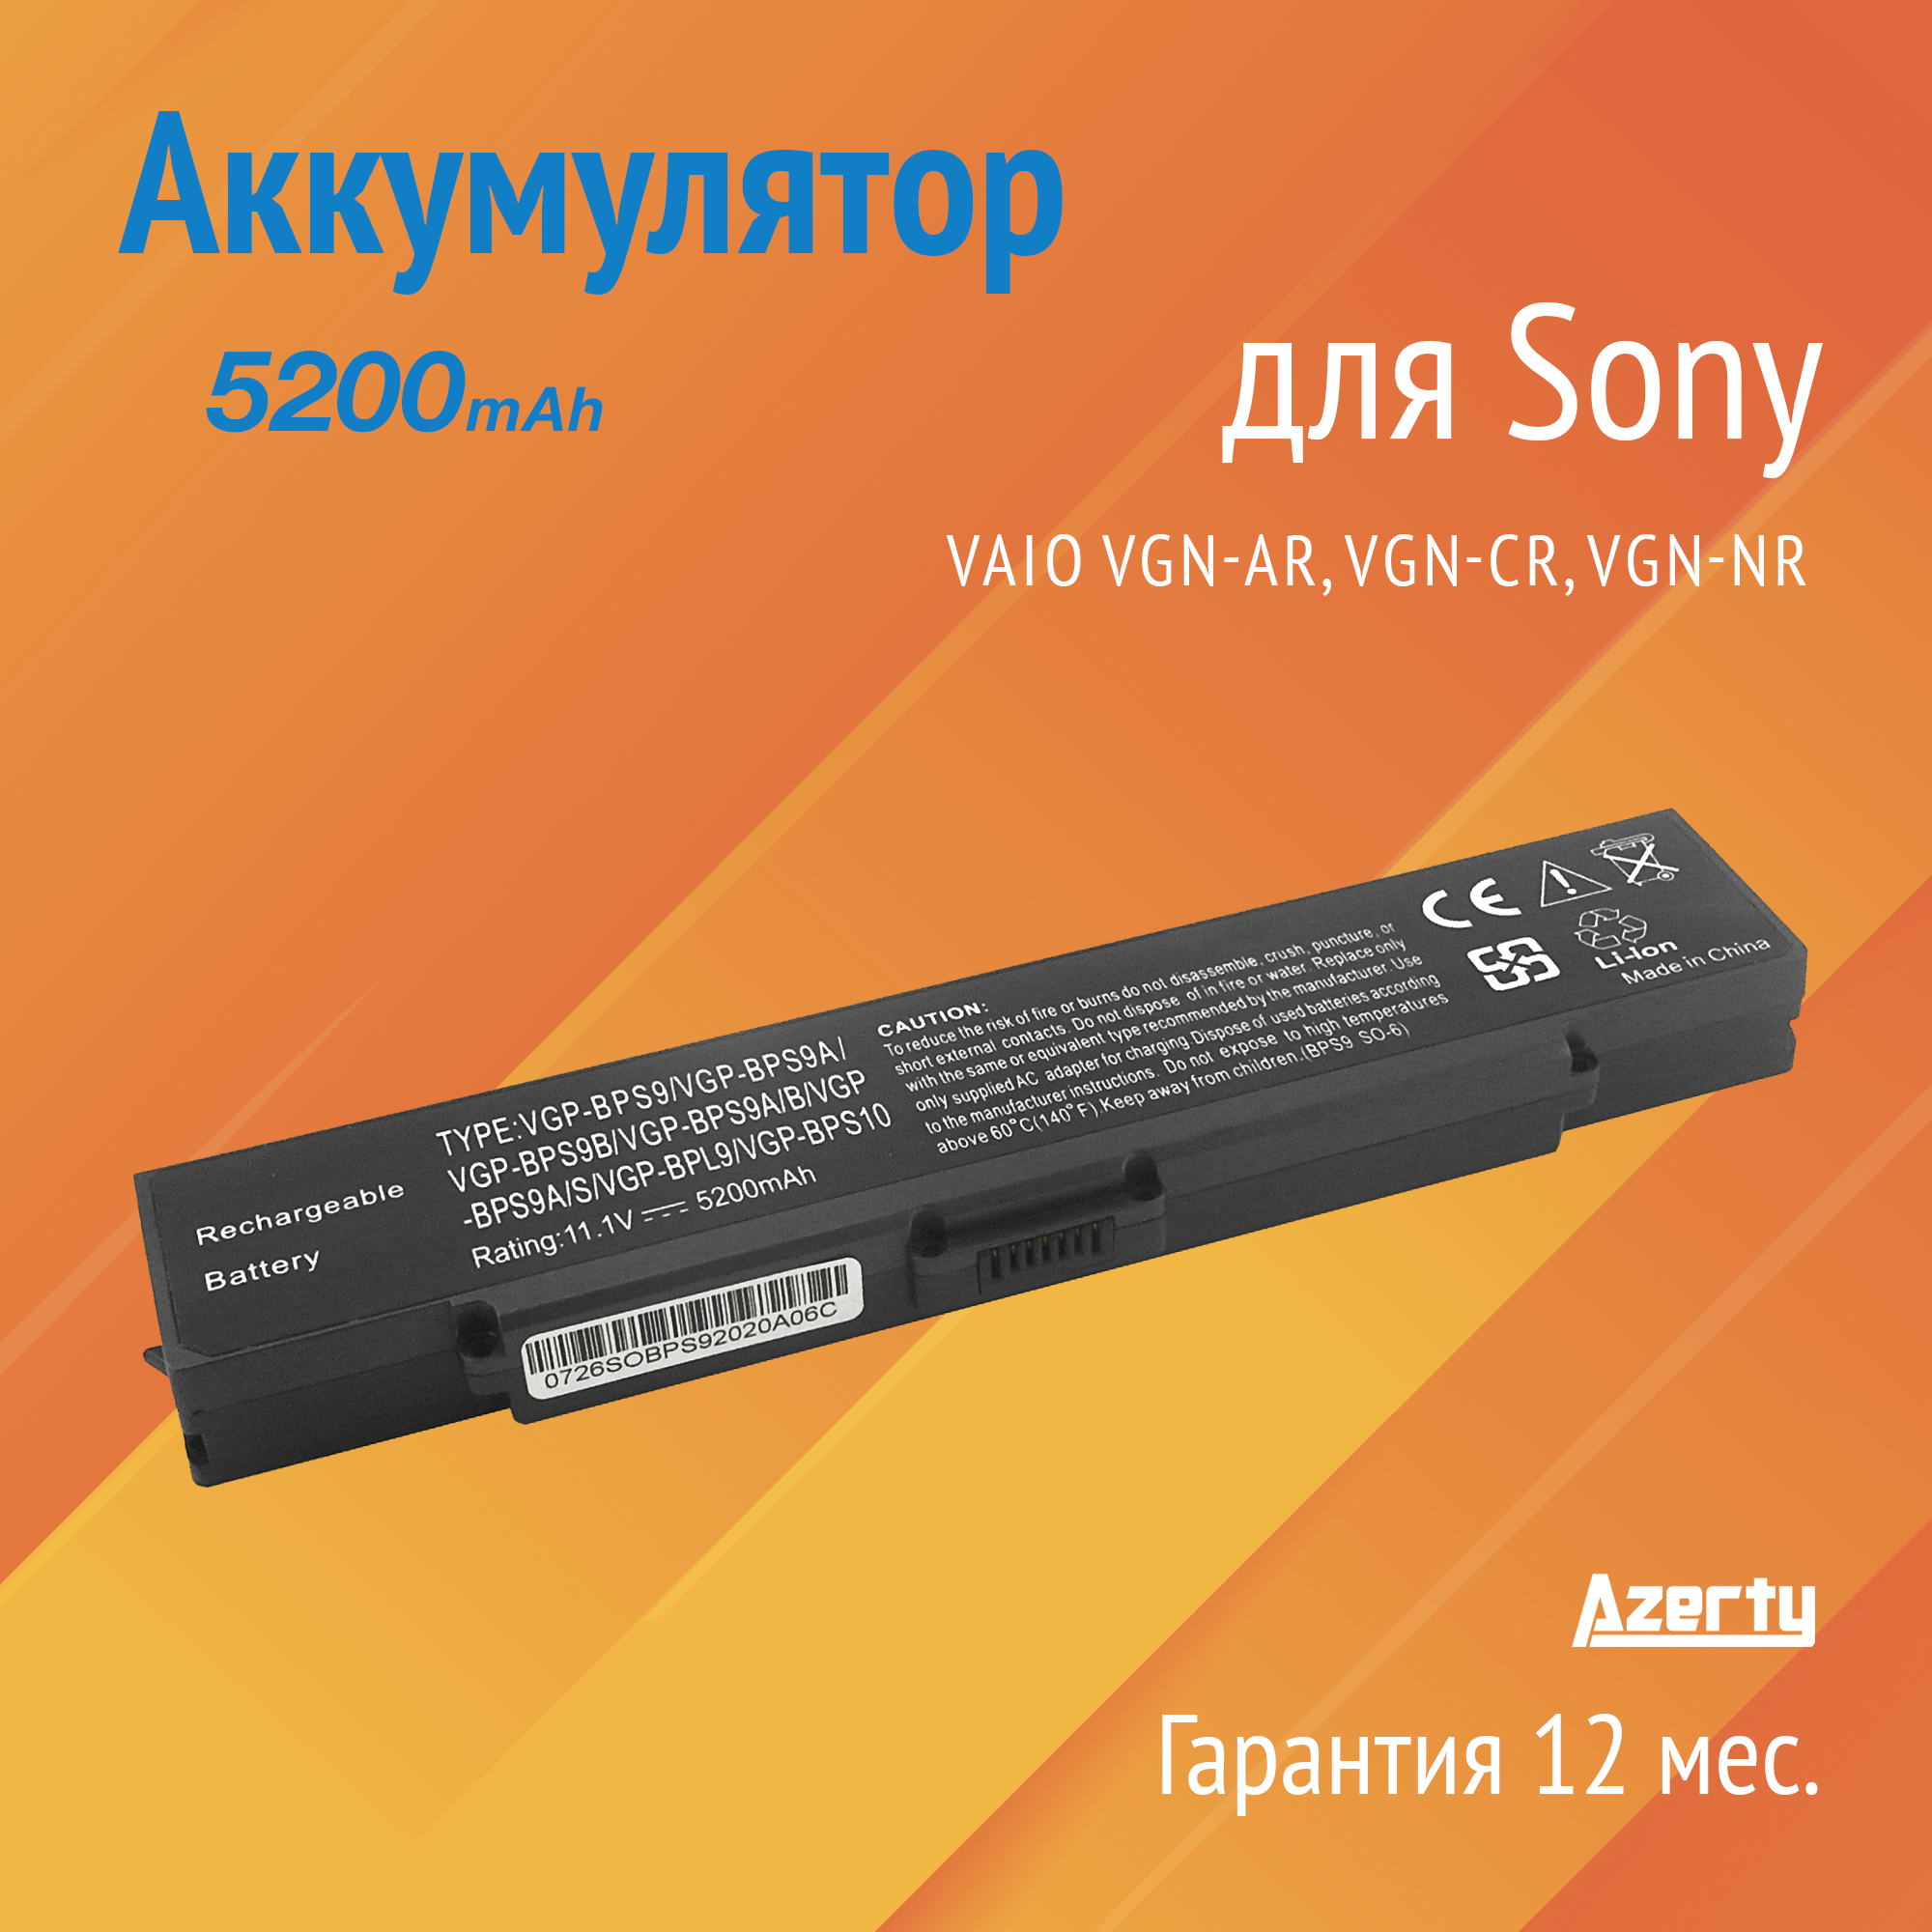 Аккумулятор BPS9 для Sony Vaio VGN-AR / VGN-CR / VGN-NR (VGP-BPL9B, VGP-BPS10)